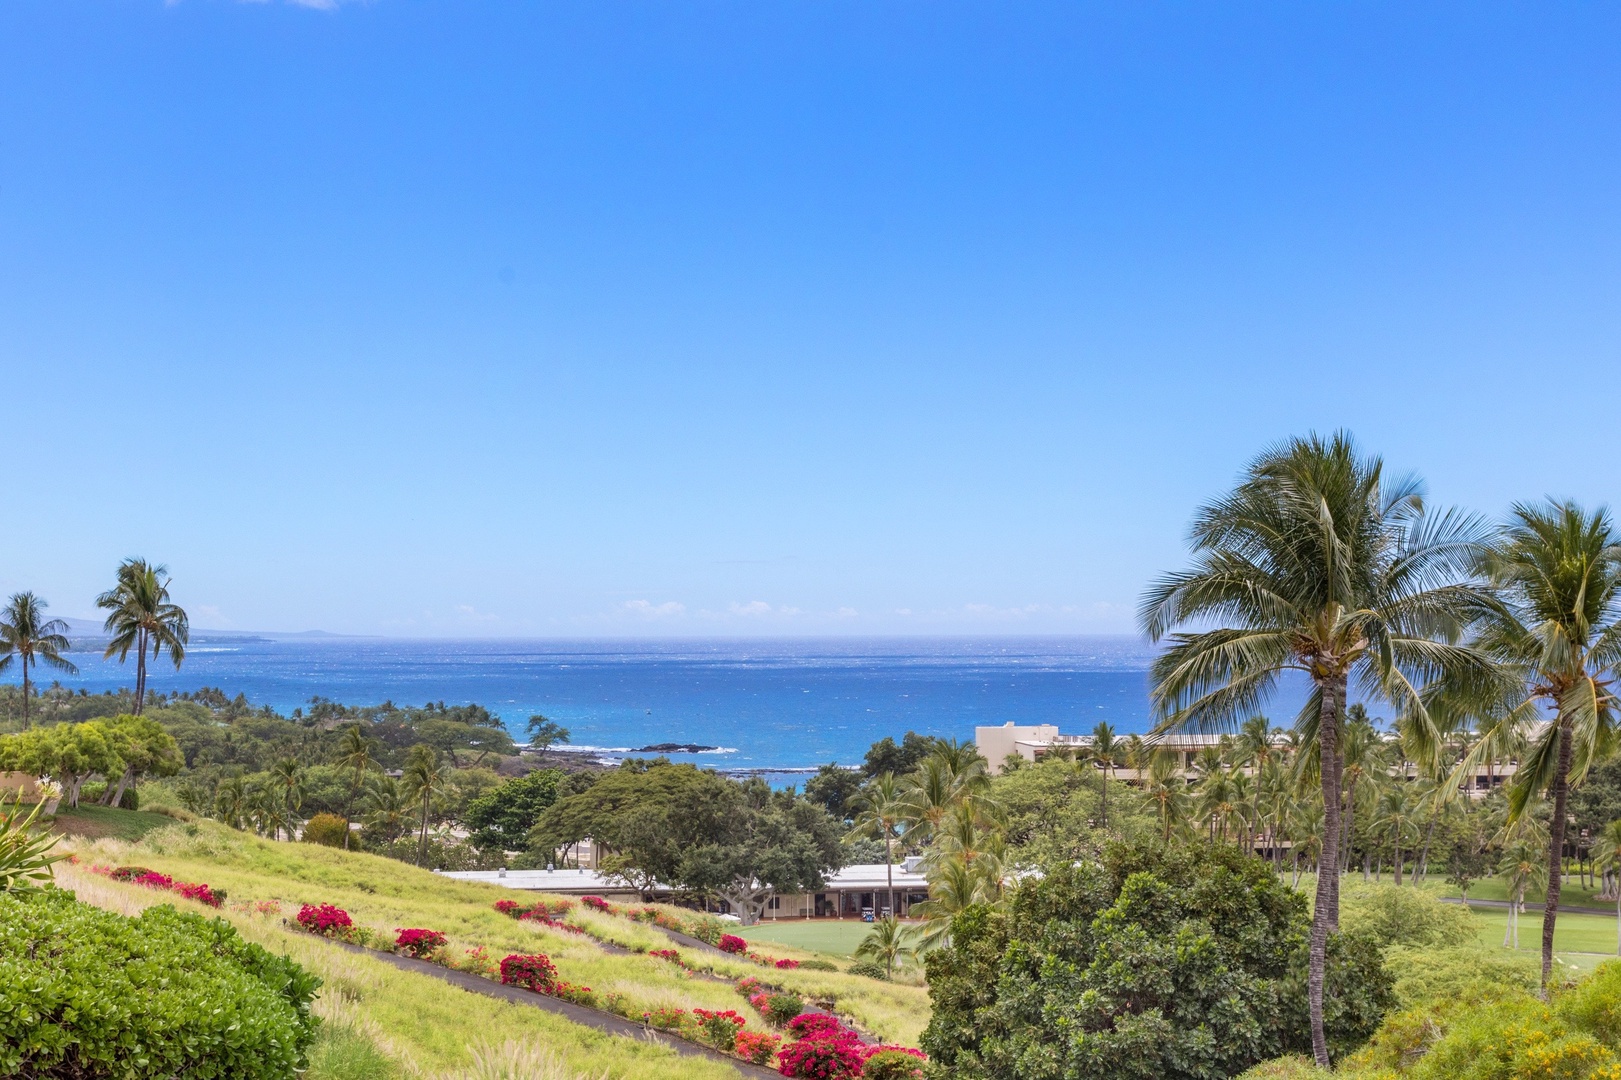 Kamuela Vacation Rentals, 4BD Villas (21) at Mauna Kea Resort - Ocean View from Lanai.